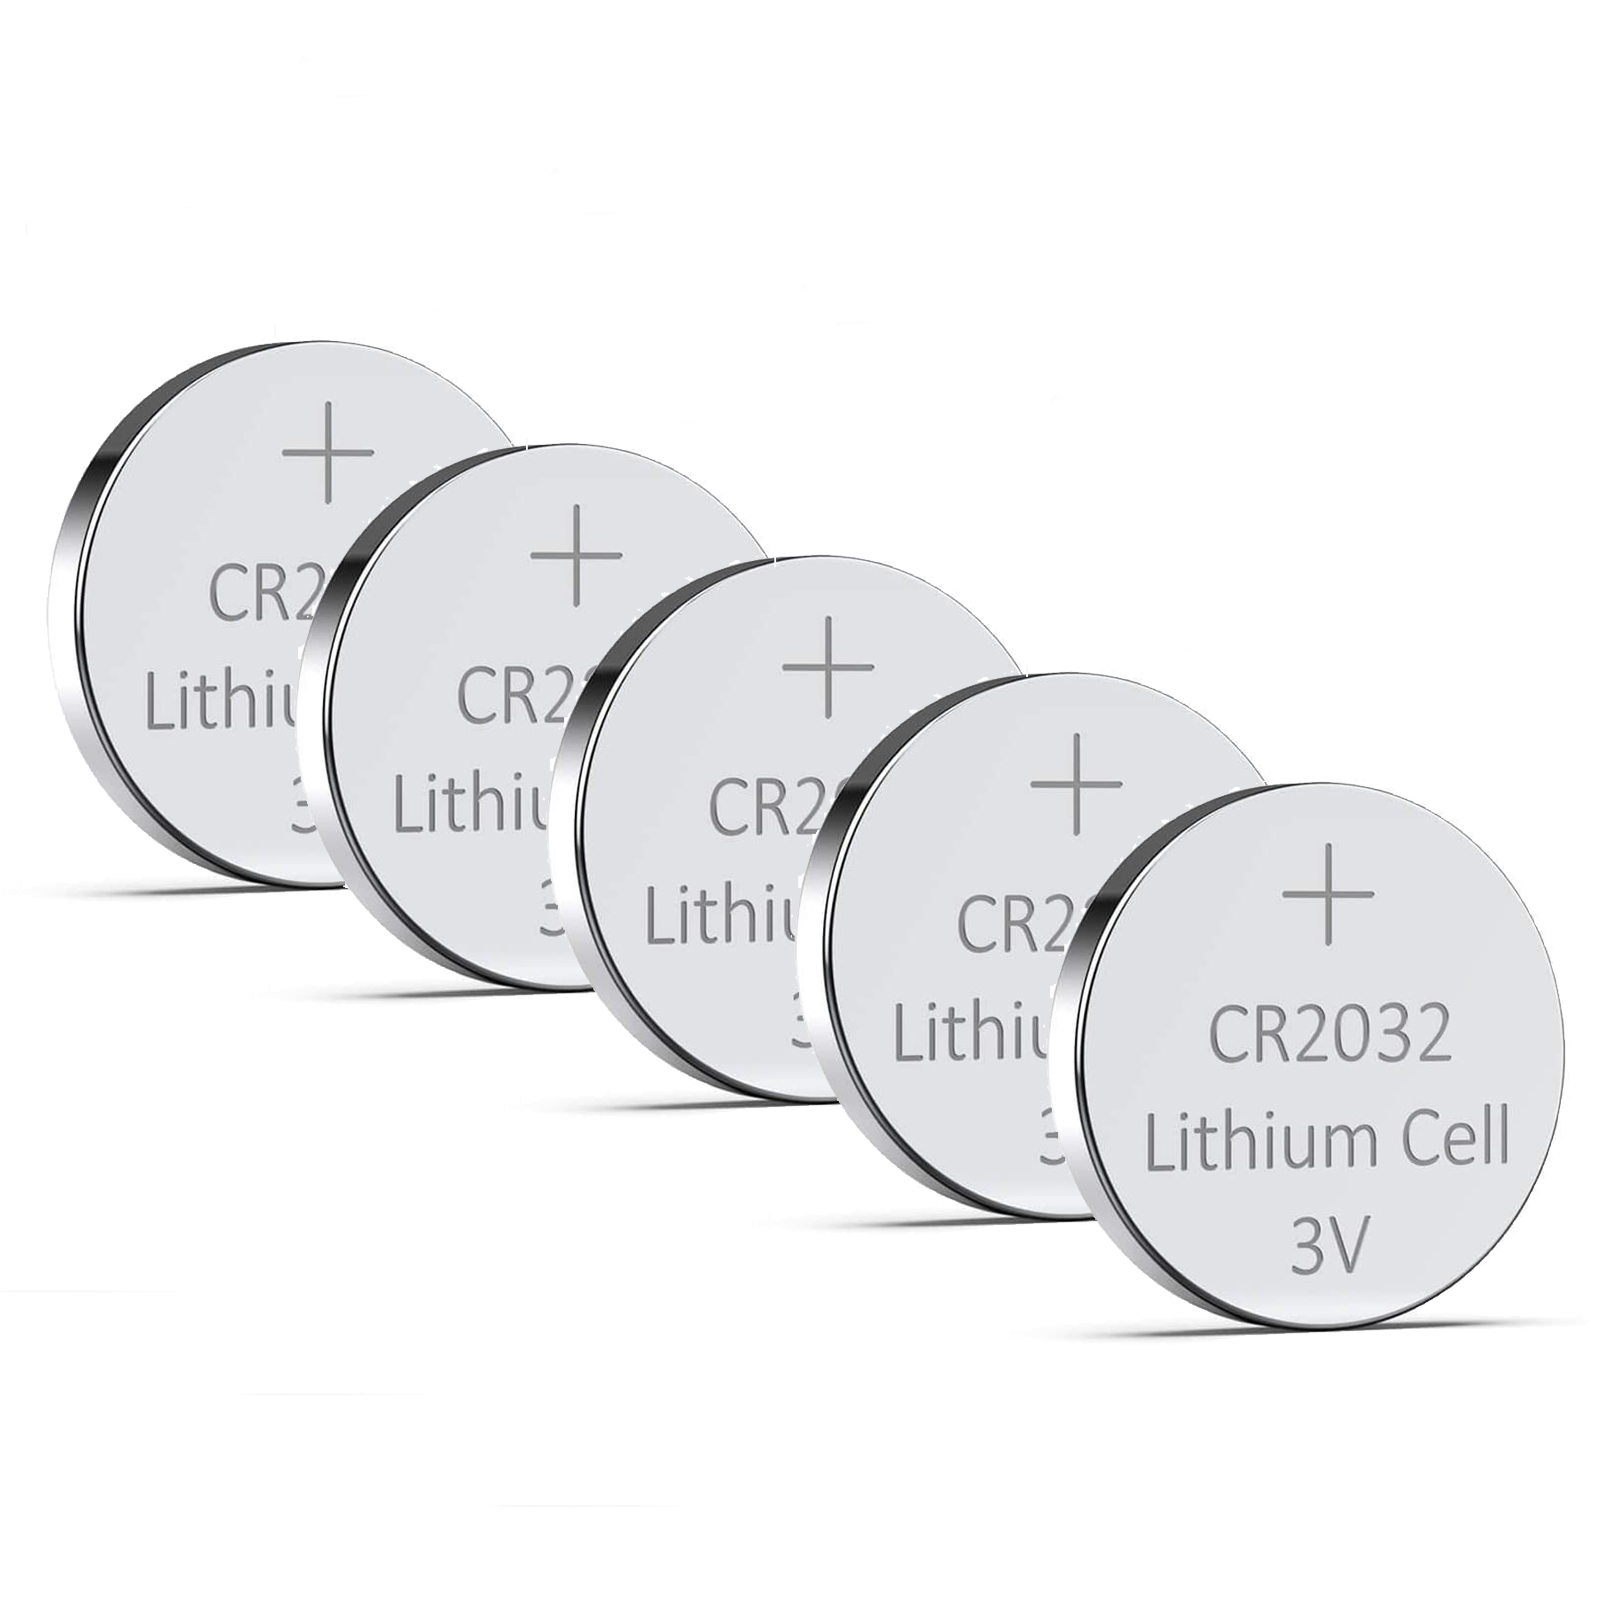 CR2032 Battery - 5 Pack